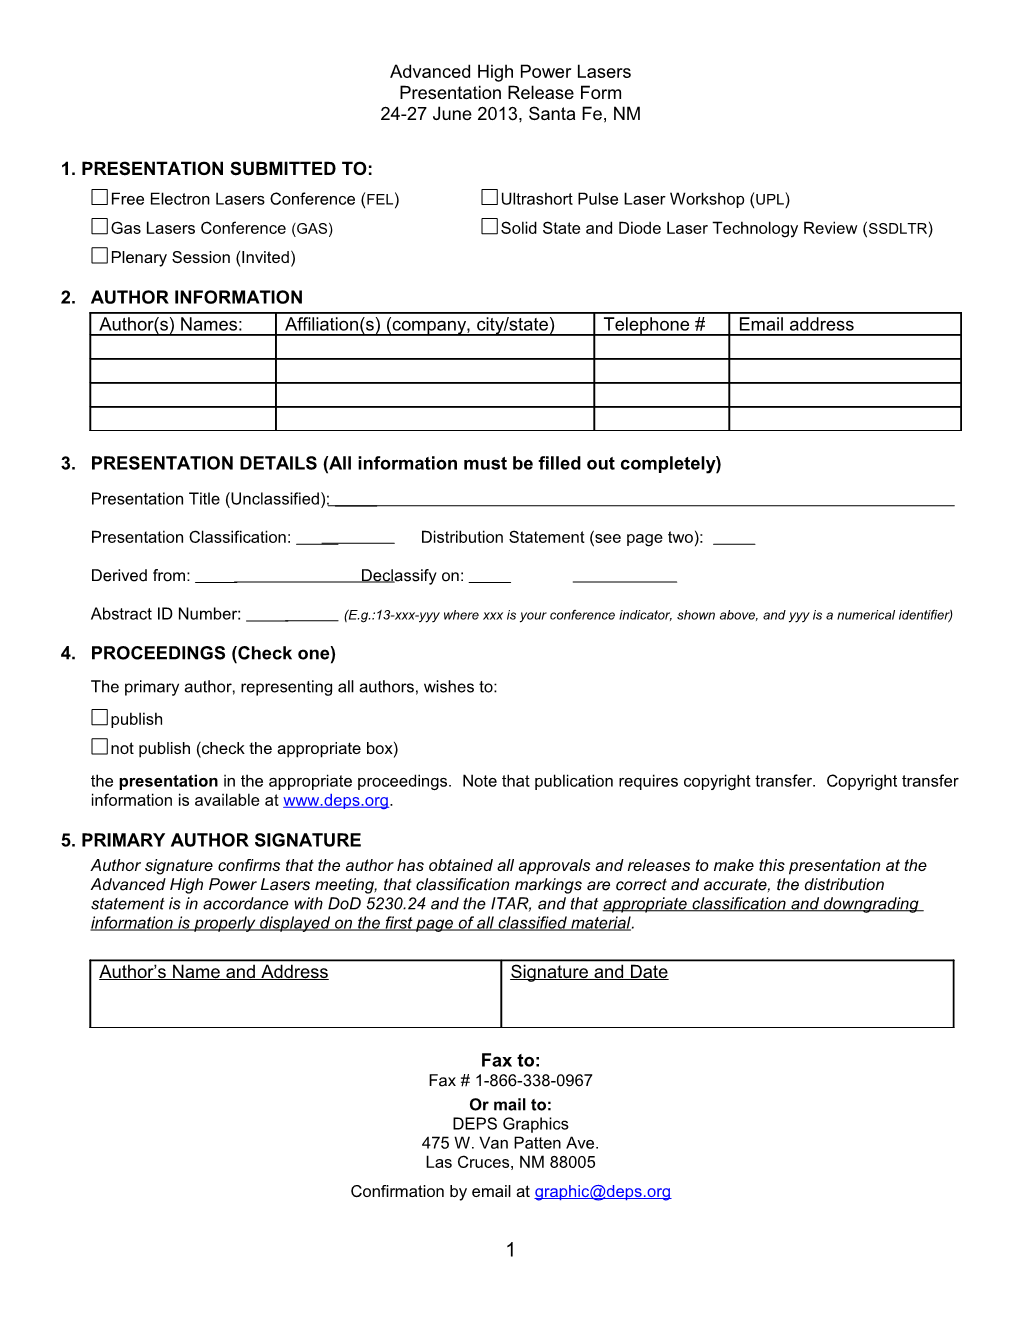 DEPS Paper Release Form